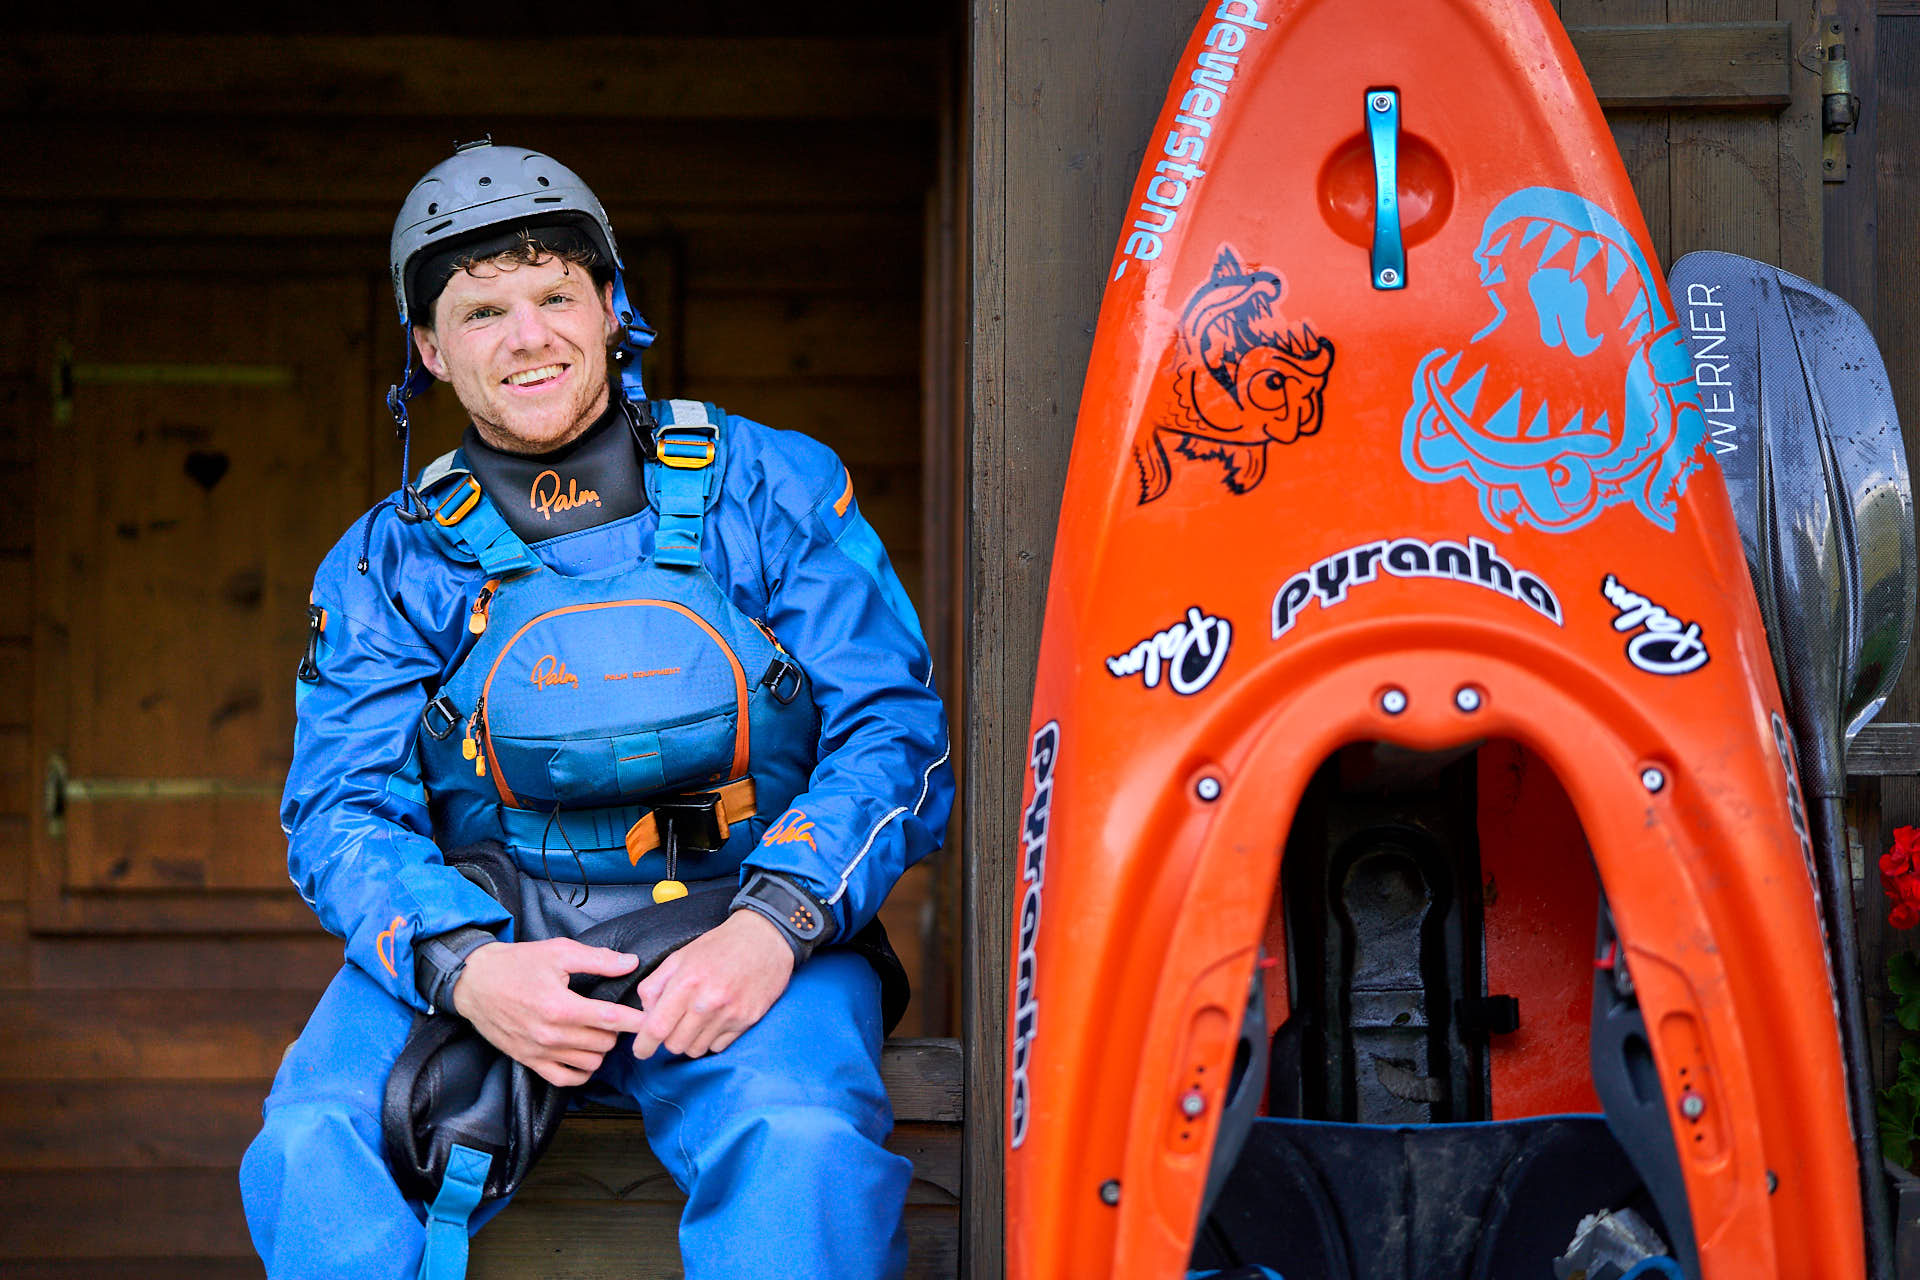 Wildwasser/Kayak Fotoshooting mit Bren Orton im Oetztal, Österreich